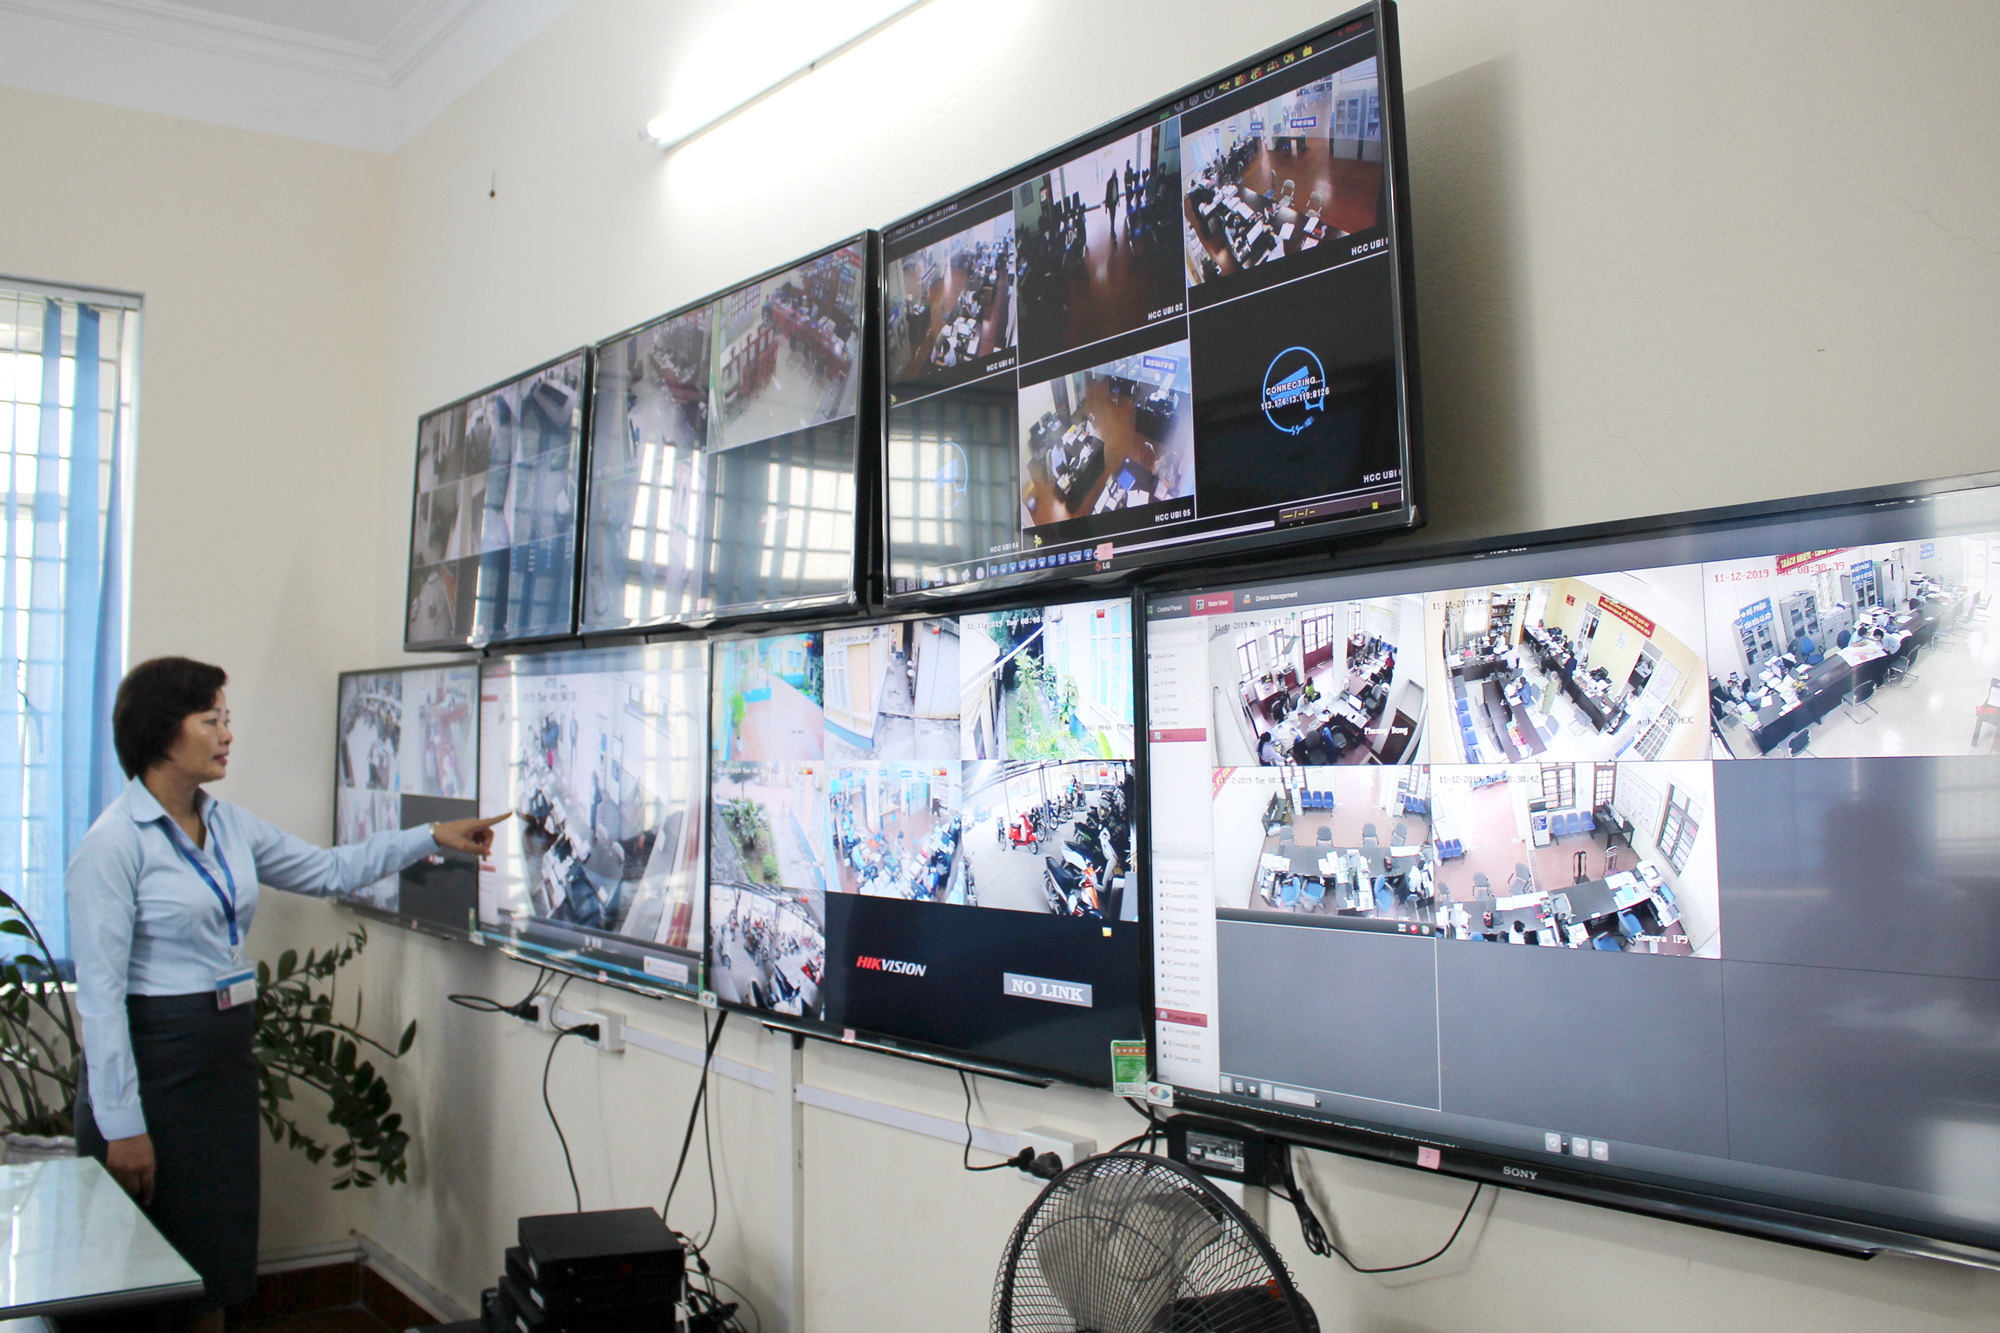 Giải quyết thủ tục hành chính cho người dân từ cấp xã được TP Uông Bí giám sát qua hệ thống camera tự động. Ảnh: Thu Chung